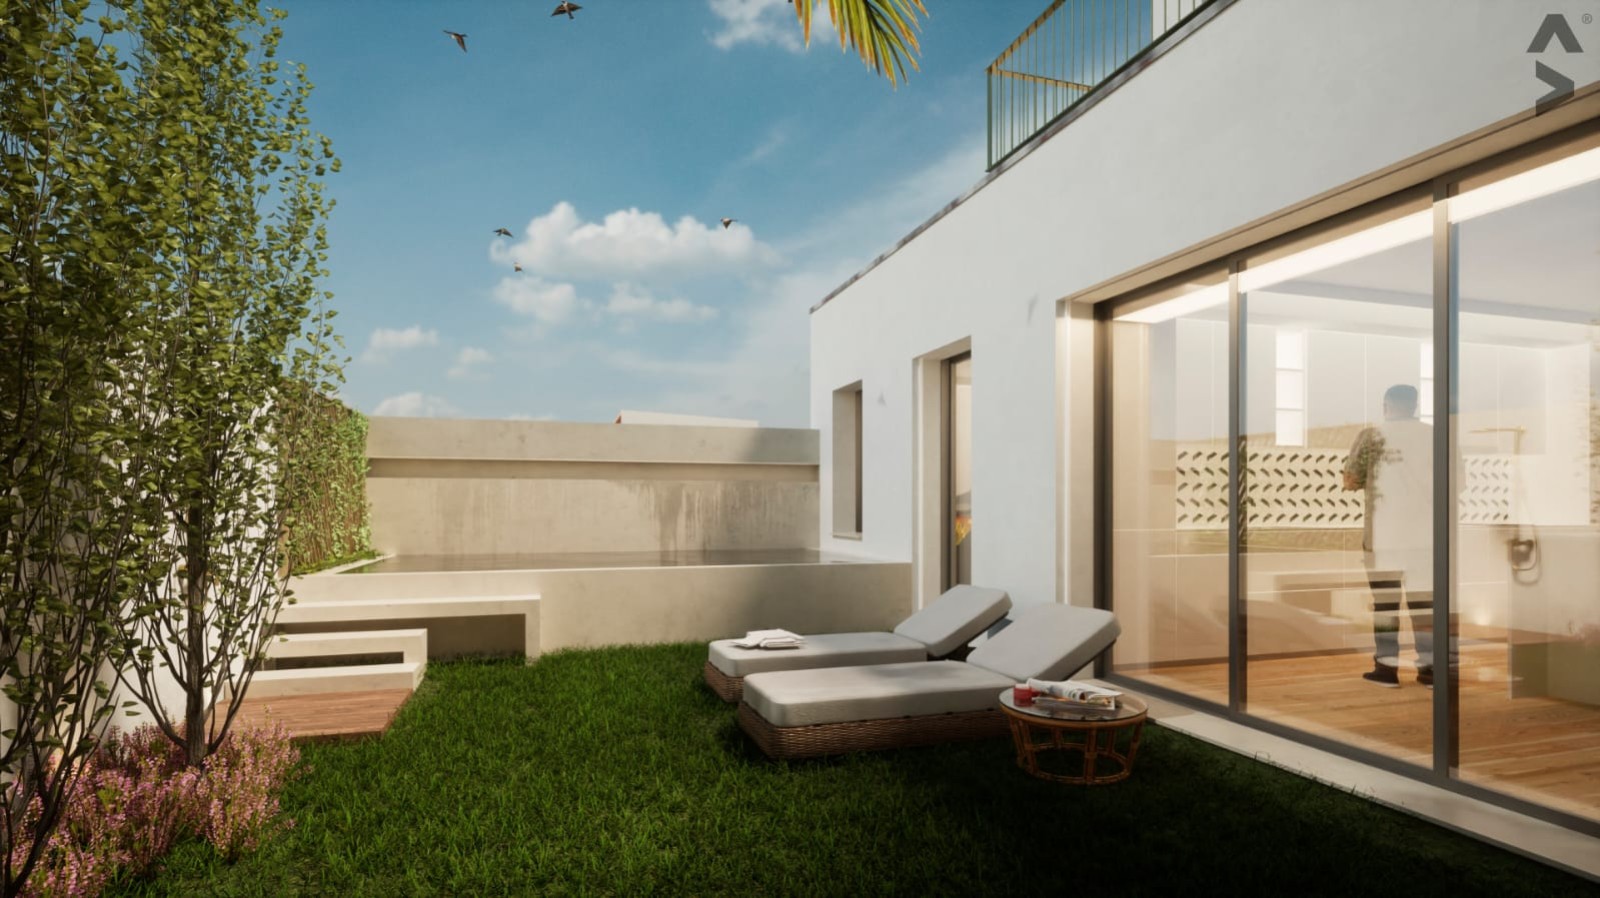 Villa mit 3 Schlafzimmern und Balkonen in Strandnähe, zu verkaufen, Gaia, Portugal_243513